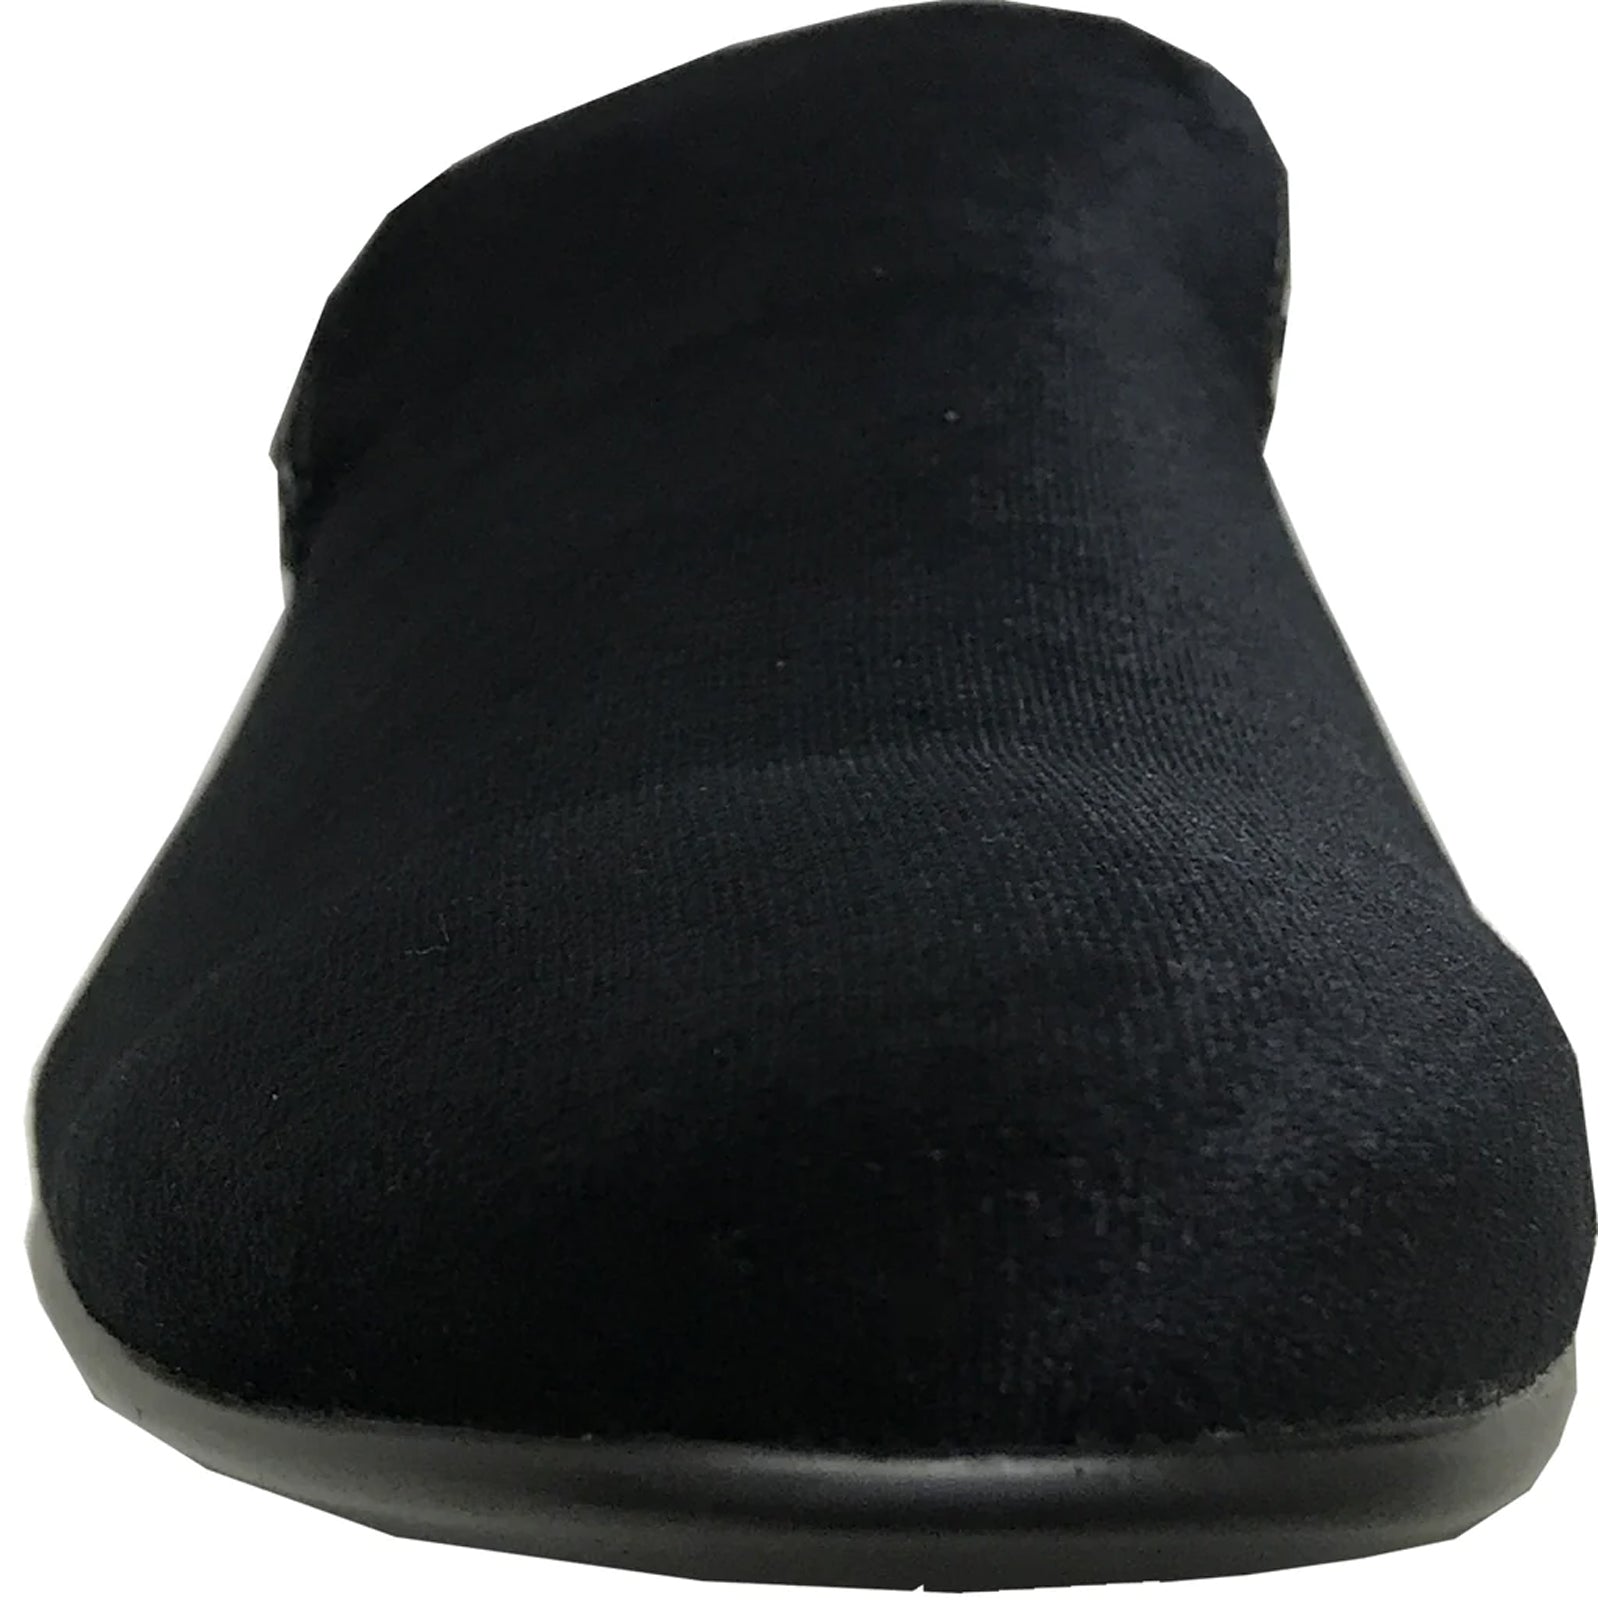 "Black Velvet Tuxedo Loafer - Modern Men's Slip-On Style"